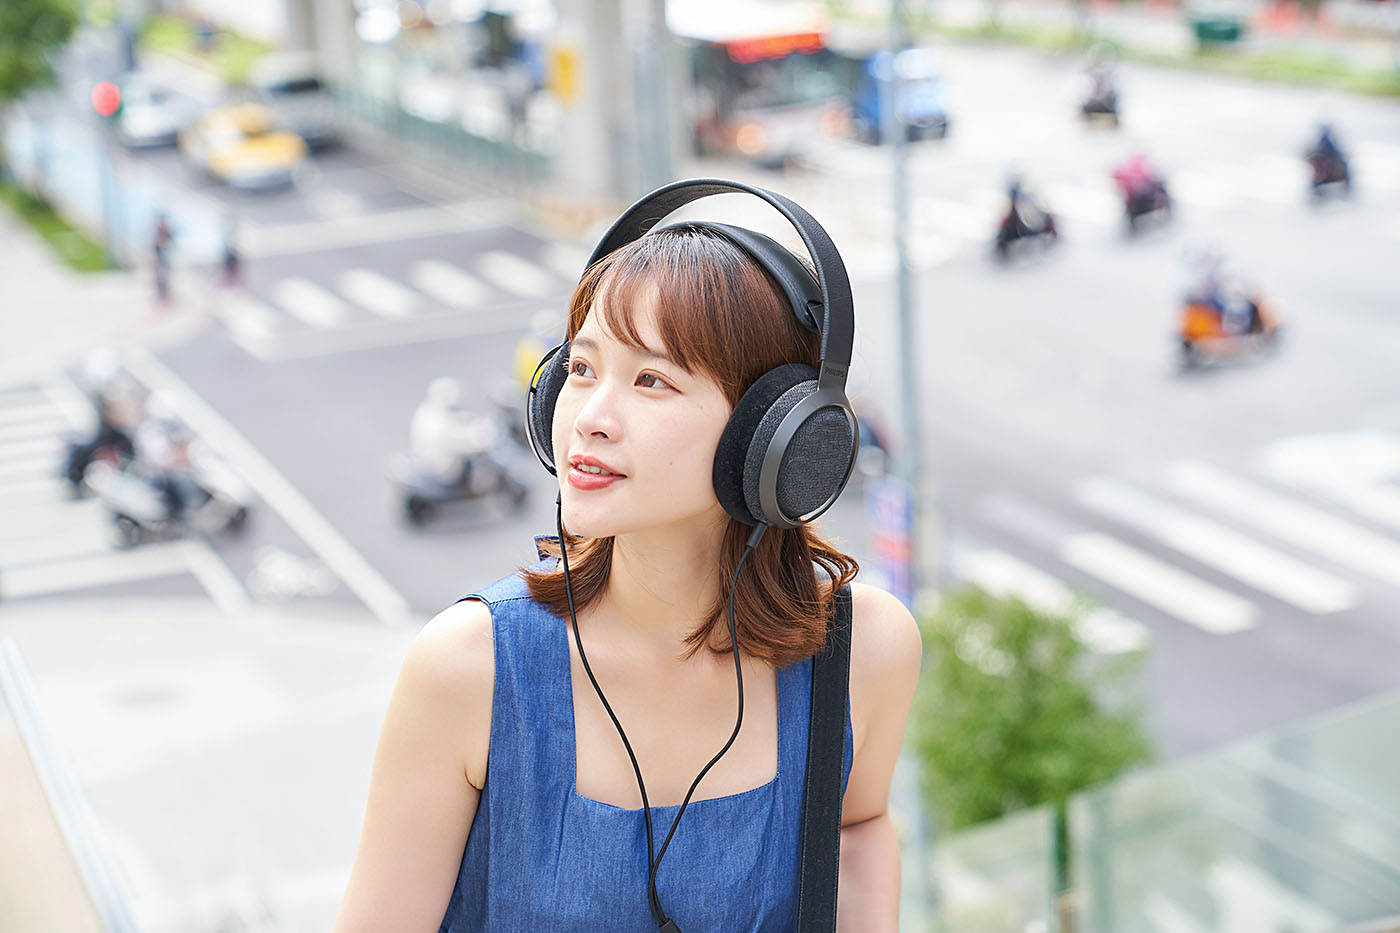 雖然Fidelio X3 並未搭載任何降噪技術，但大型覆耳式設計的耳機都具備一定程度的物理性隔絕噪音能力，透過耳罩將耳朵完整包覆，以及耳機外殼阻絕部分環境聲響，使得Fidelio X3 縱使在通勤時佩戴聆樂，也能享有優質的聲音表現。